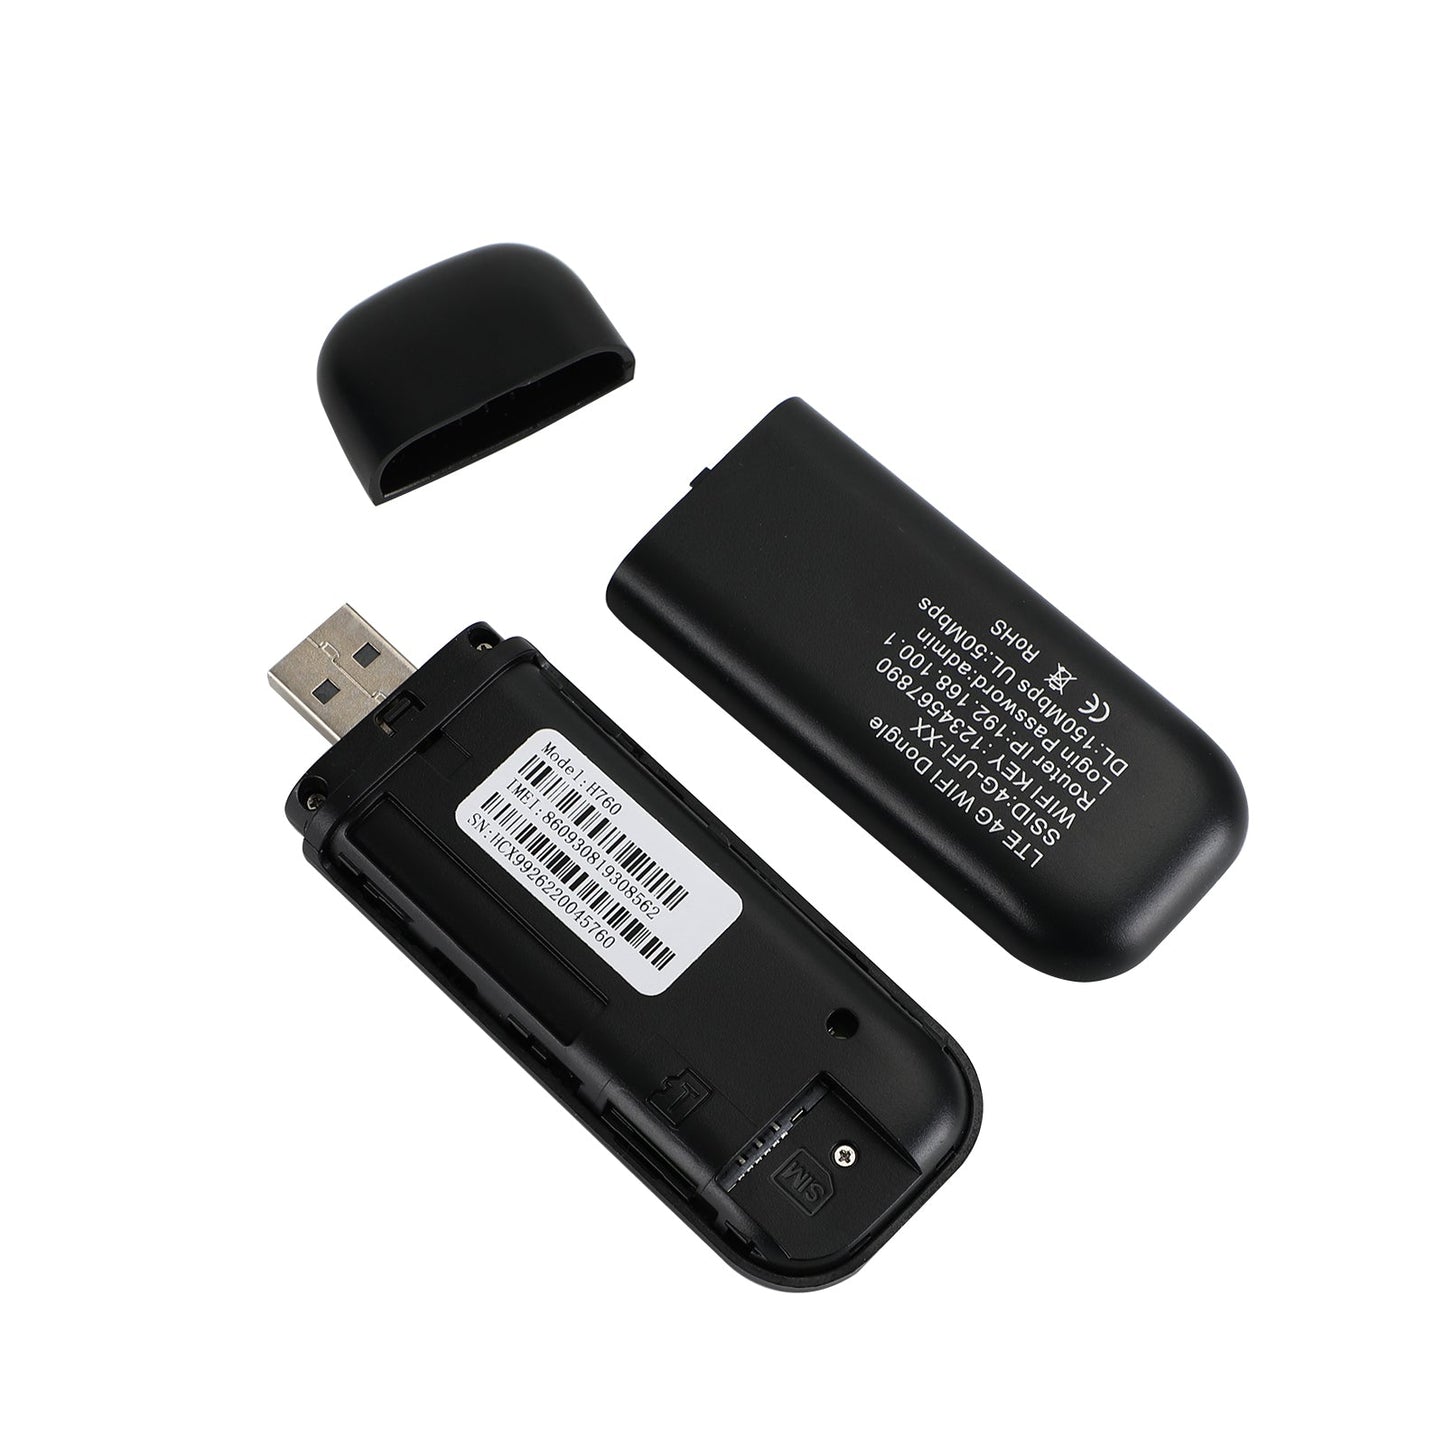 Déduit USB 4G Dongle LTE WiFI Routeur sans fil Modem haut débit mobile Carte SIM